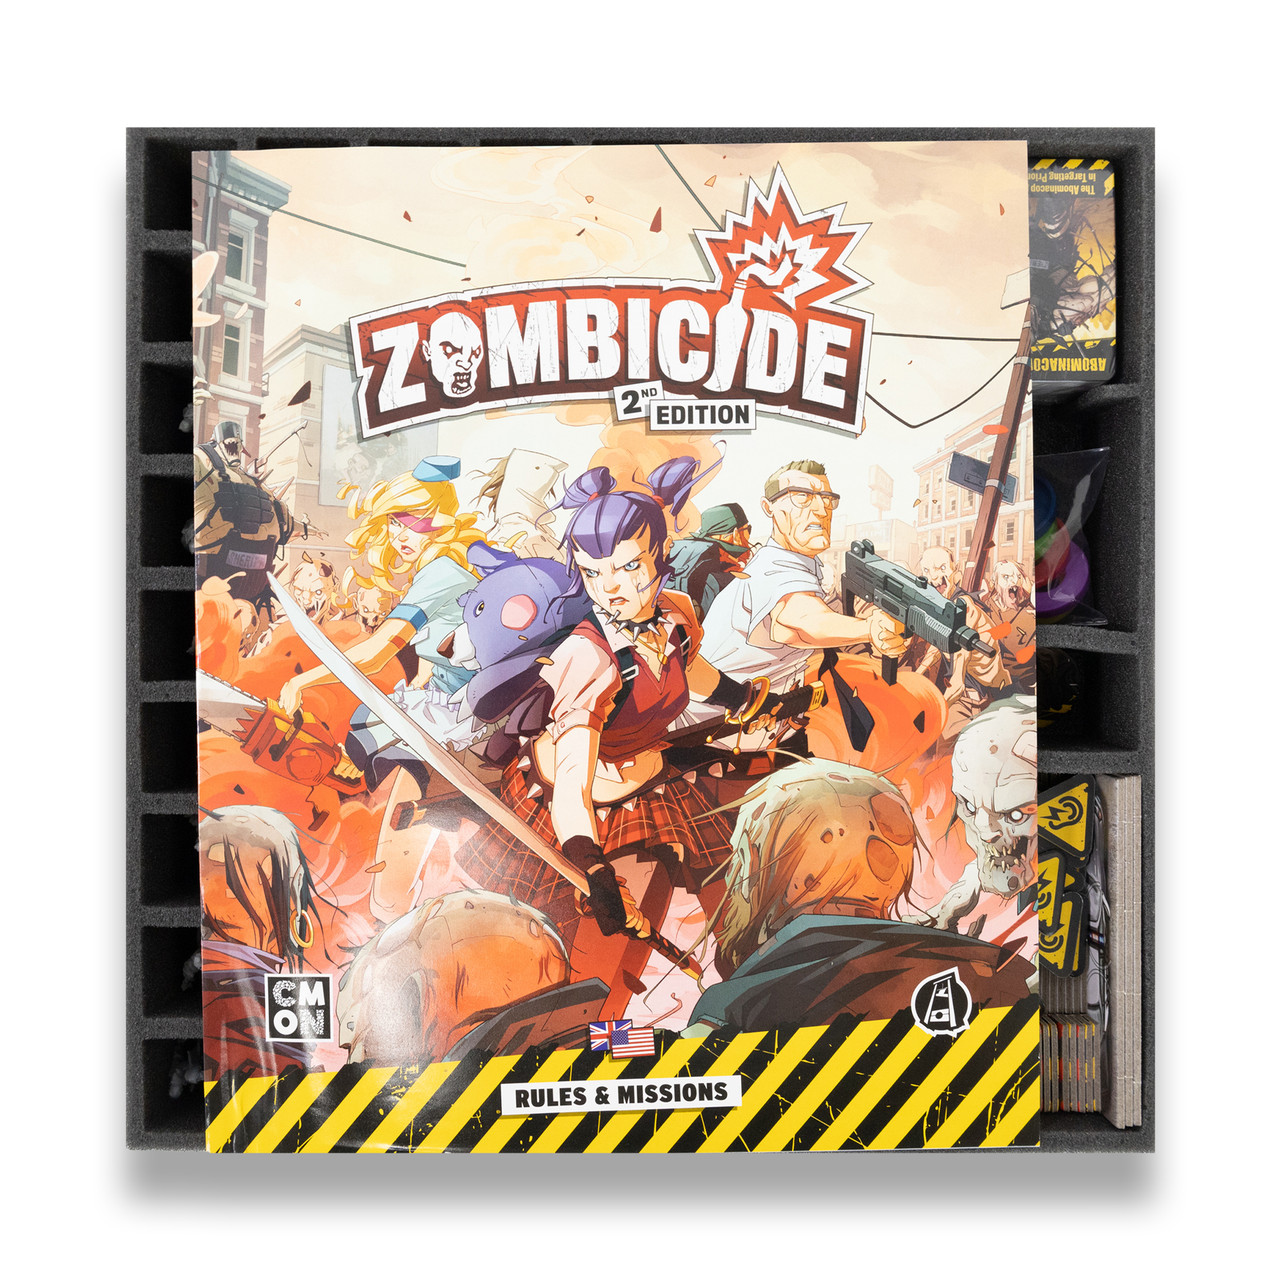 Marvel Zombies - A Zombicide Game Box Foam Tray Kit - Battle Foam